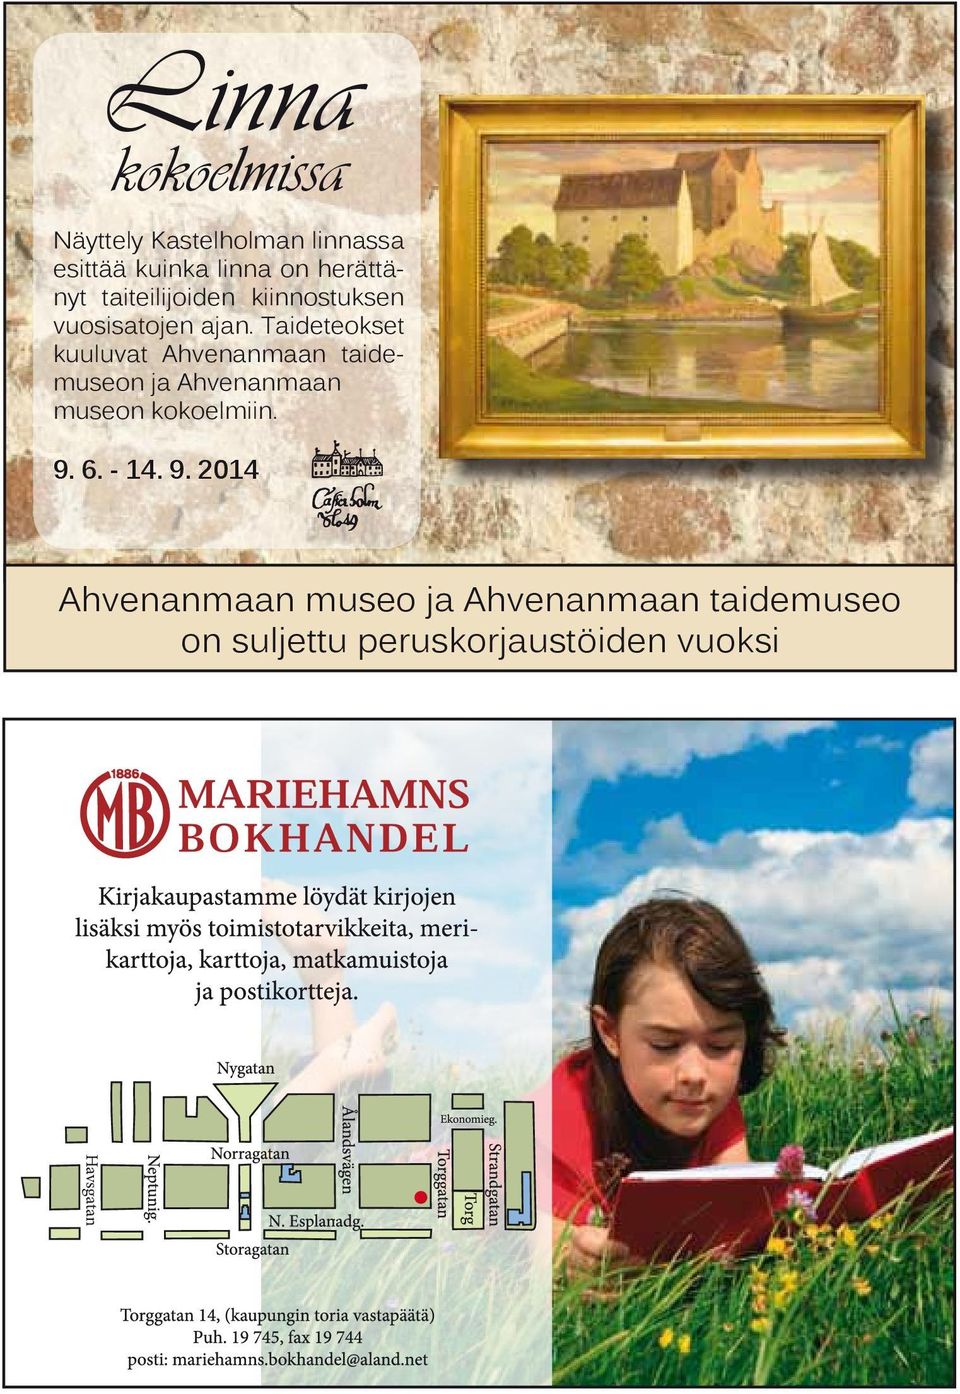 Taideteokset kuuluvat Ahvenanmaan taidemuseon ja Ahvenanmaan museon kokoelmiin.